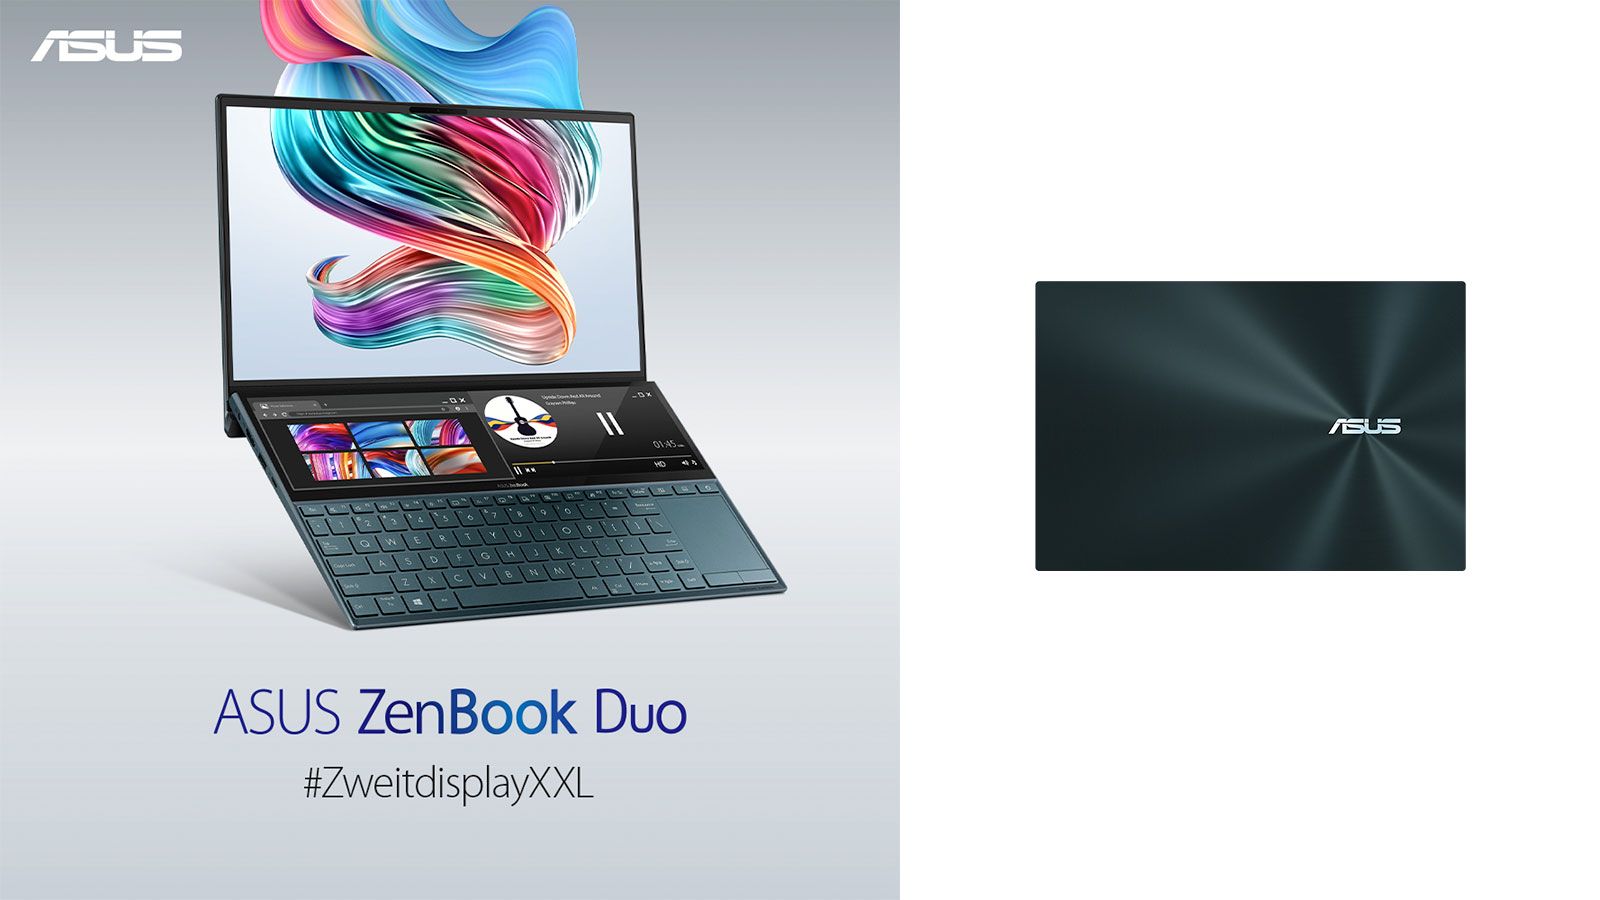 GQ Magazin Gewinnspiel: ASUS ZenBook Duo Notebook zu gewinnen